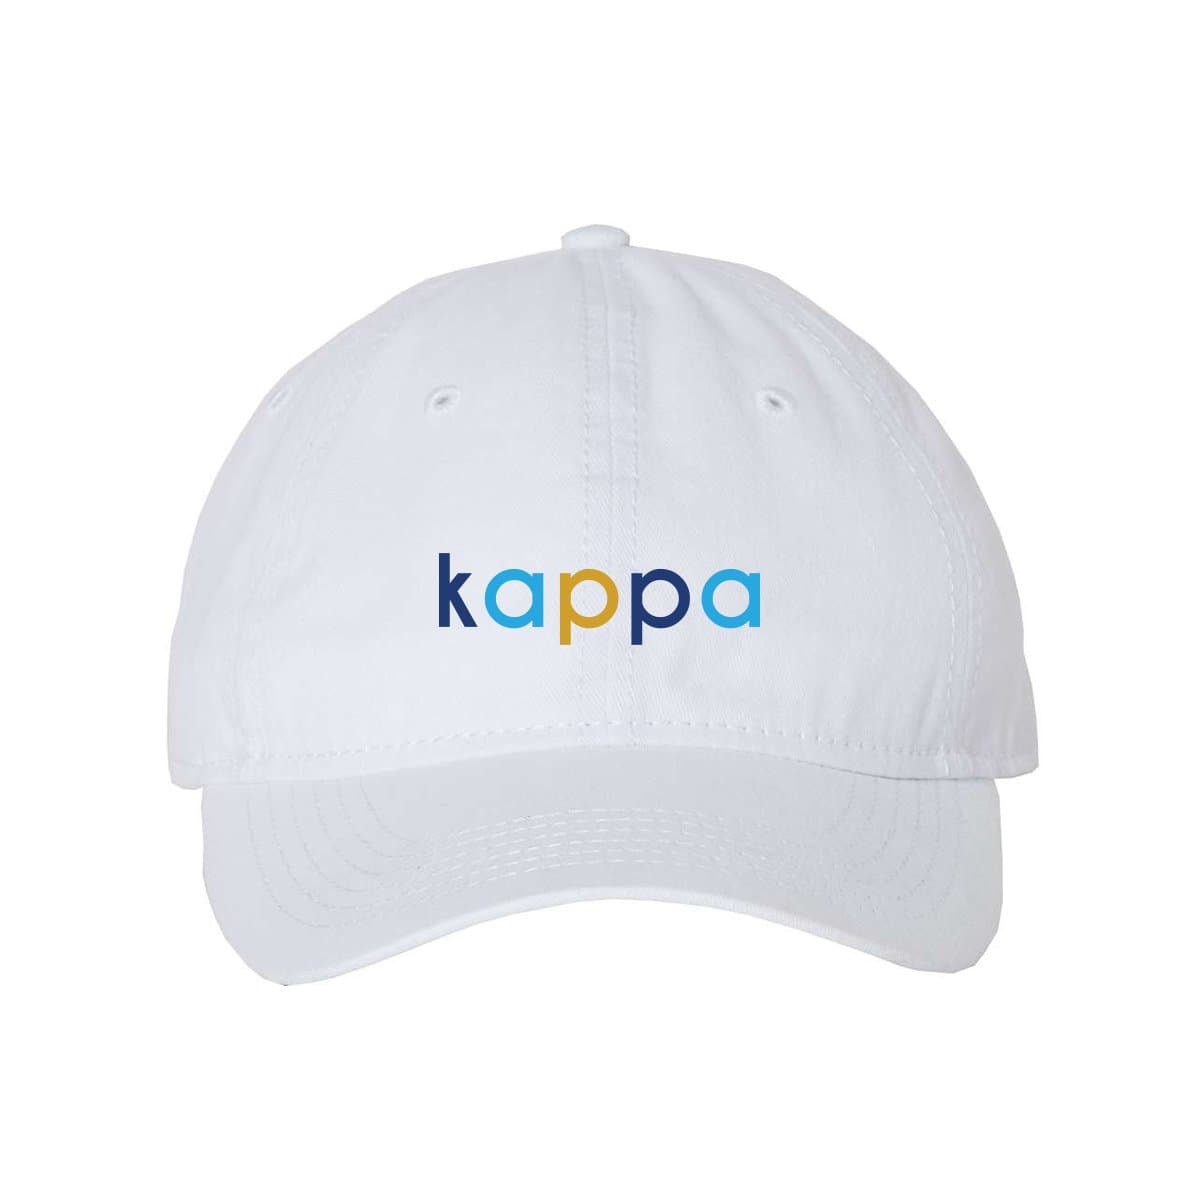 Kappa Keep It Colorful Ball Cap | Kappa Kappa Gamma | Headwear > Billed hats